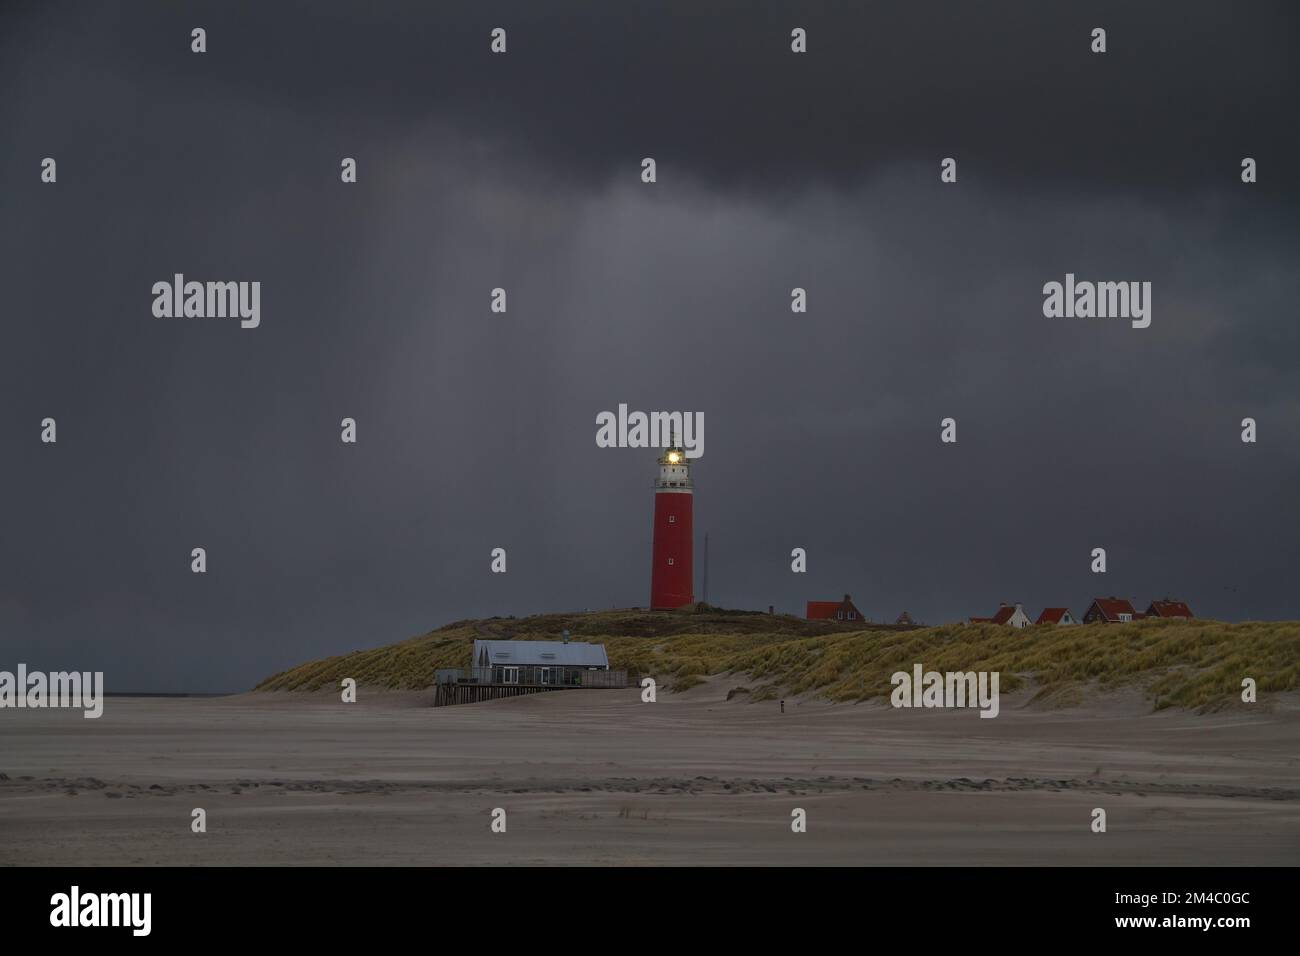 Lighthouse on dunes, rain at nightfall, light in the darkness Stock Photo